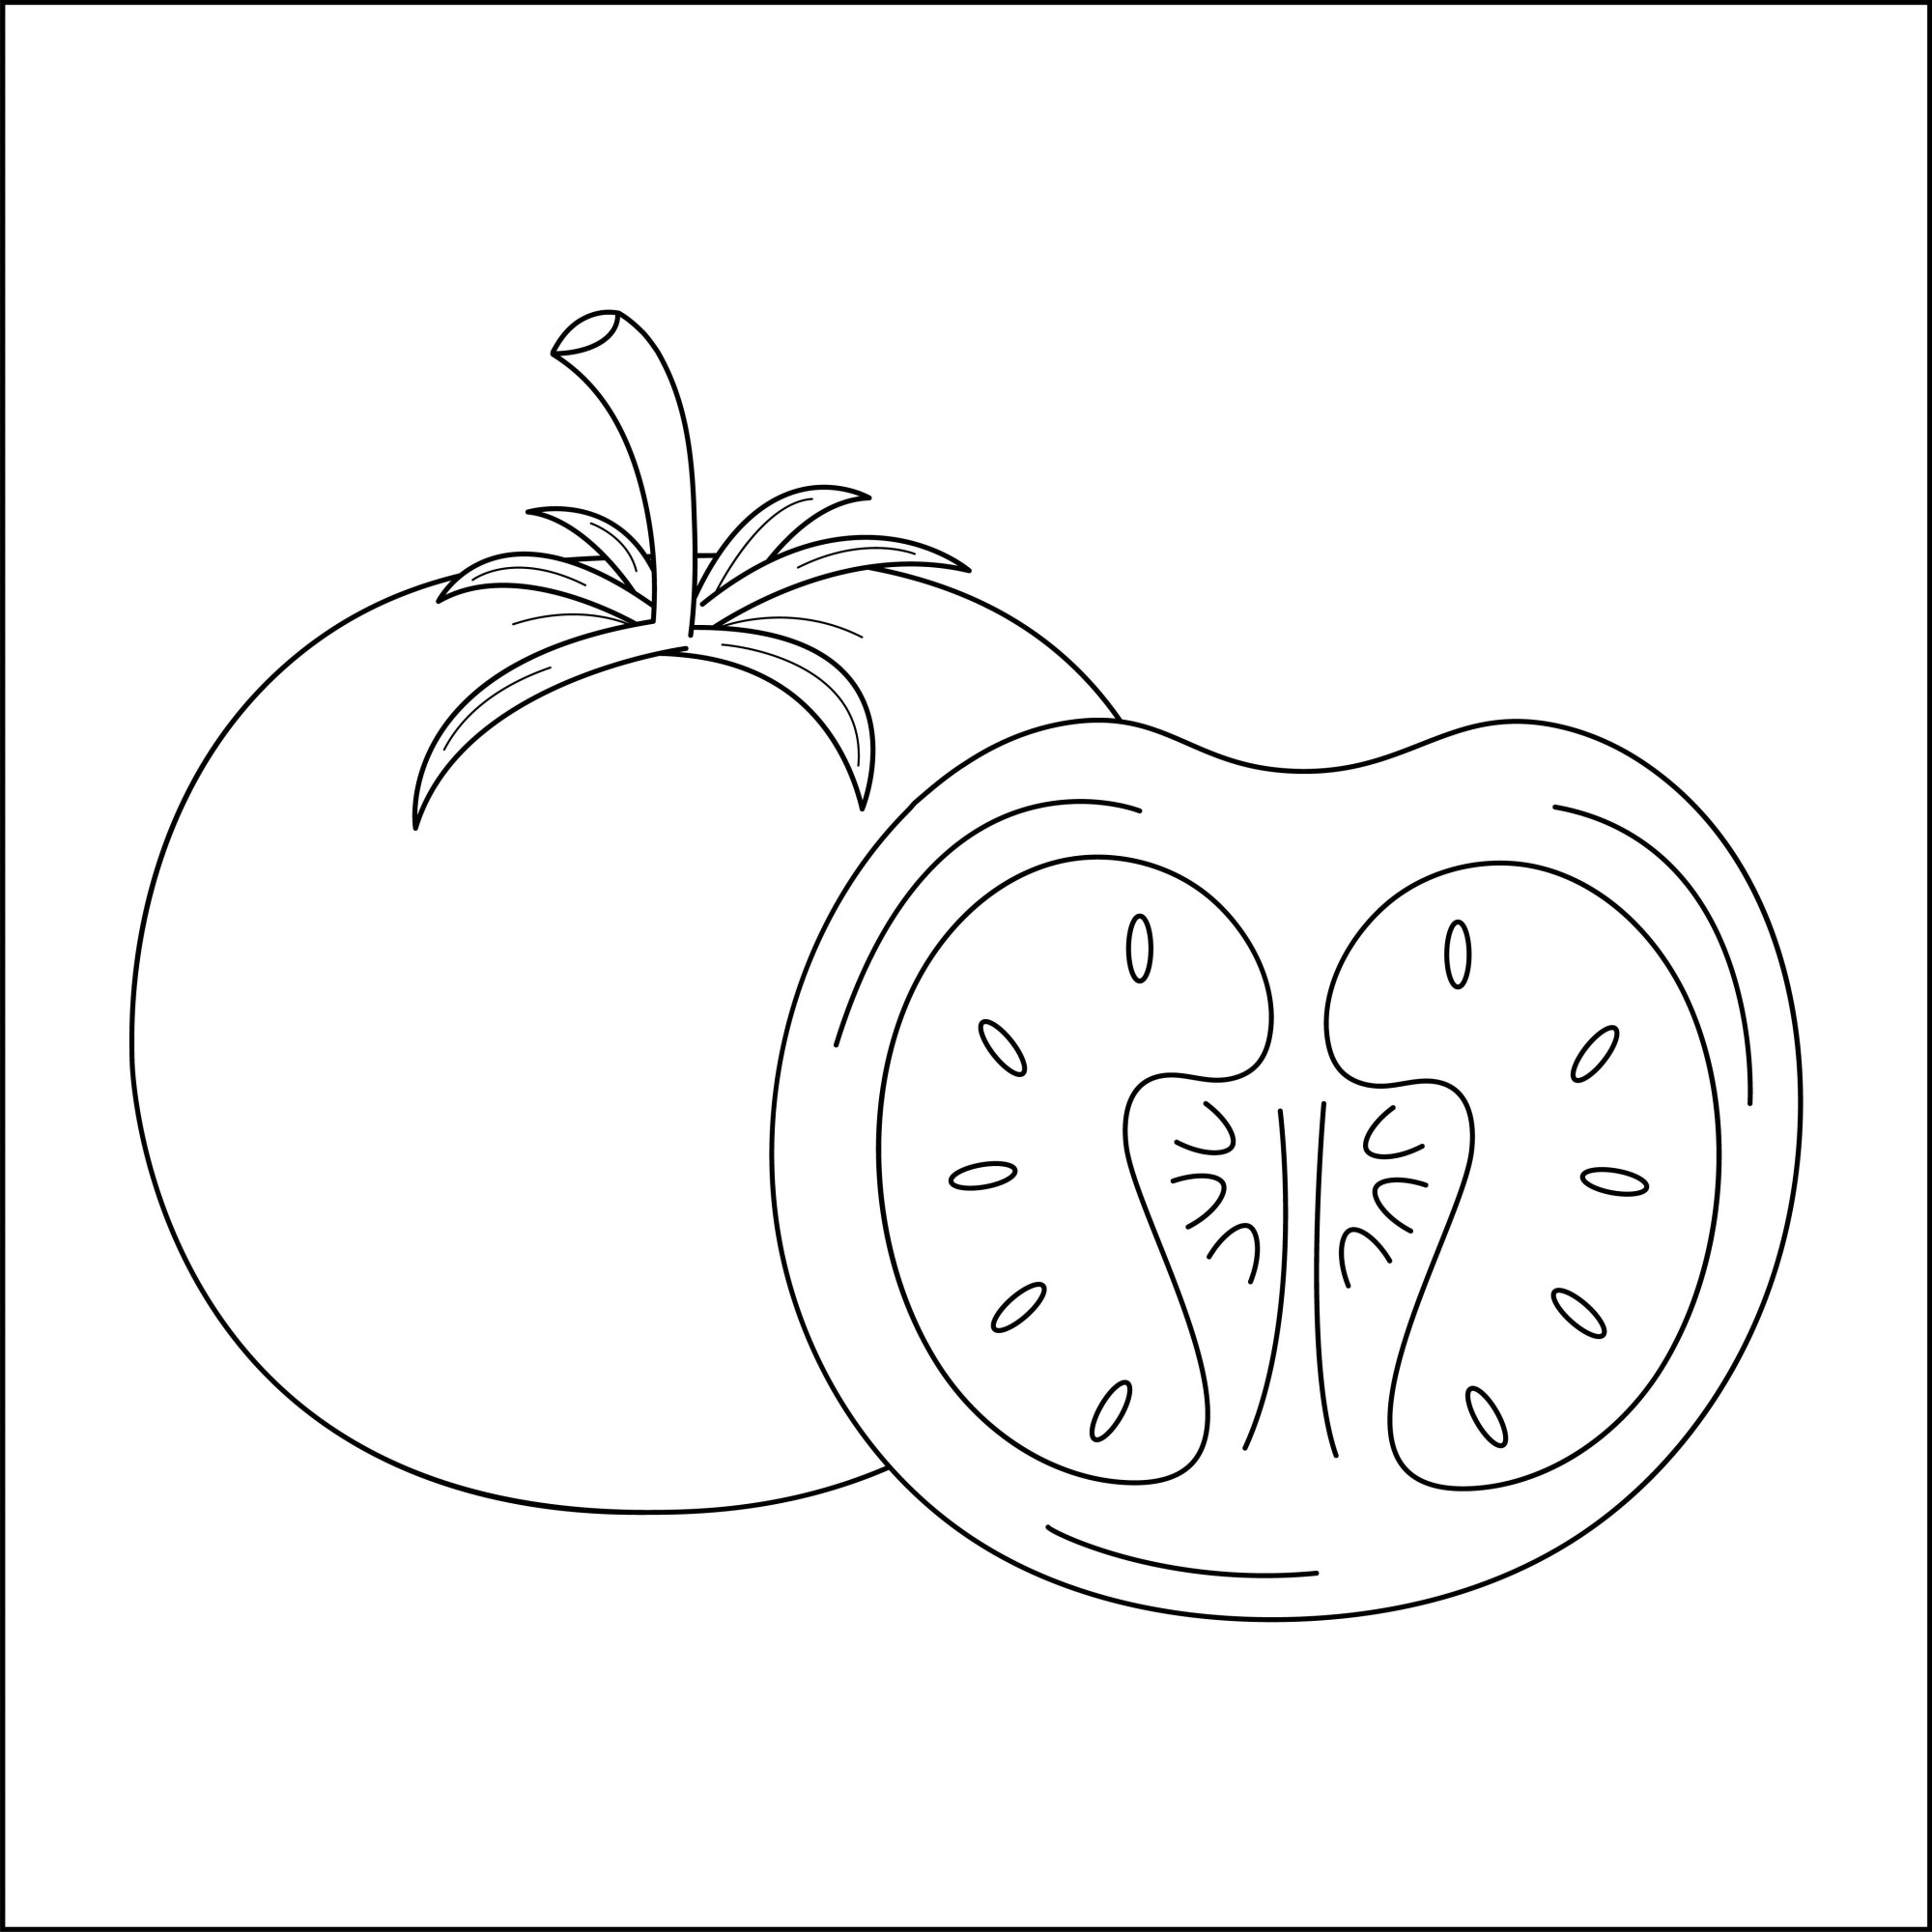 Раскраска для детей: помидор с половинкой